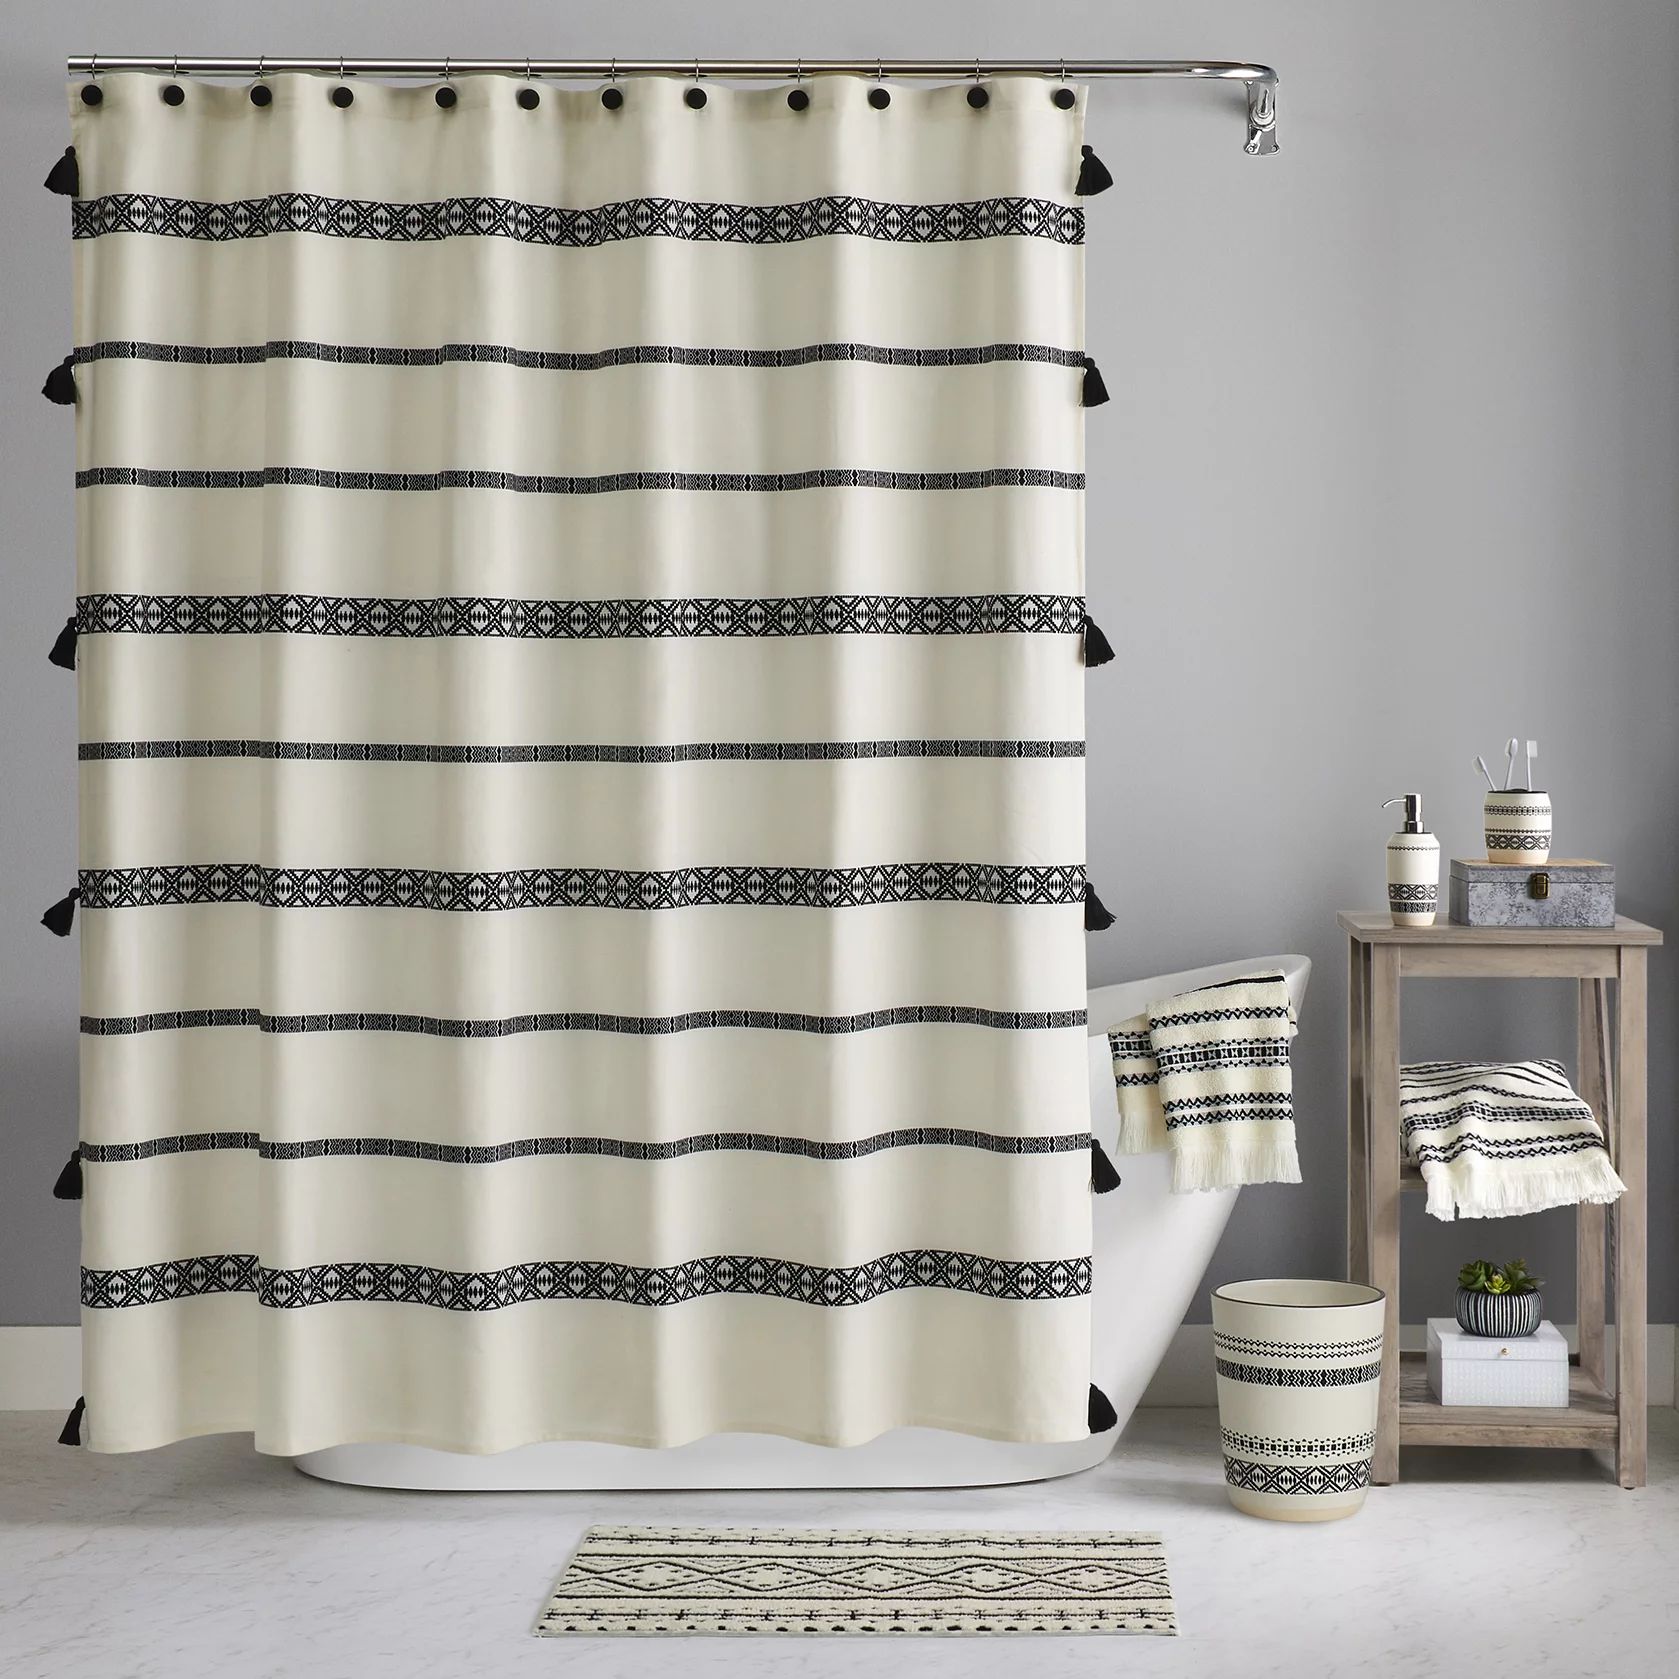 Boho Chic Cotton Shower Curtain, Beige, Black, Better Homes & Gardens, 72” x 72” | Walmart (US)